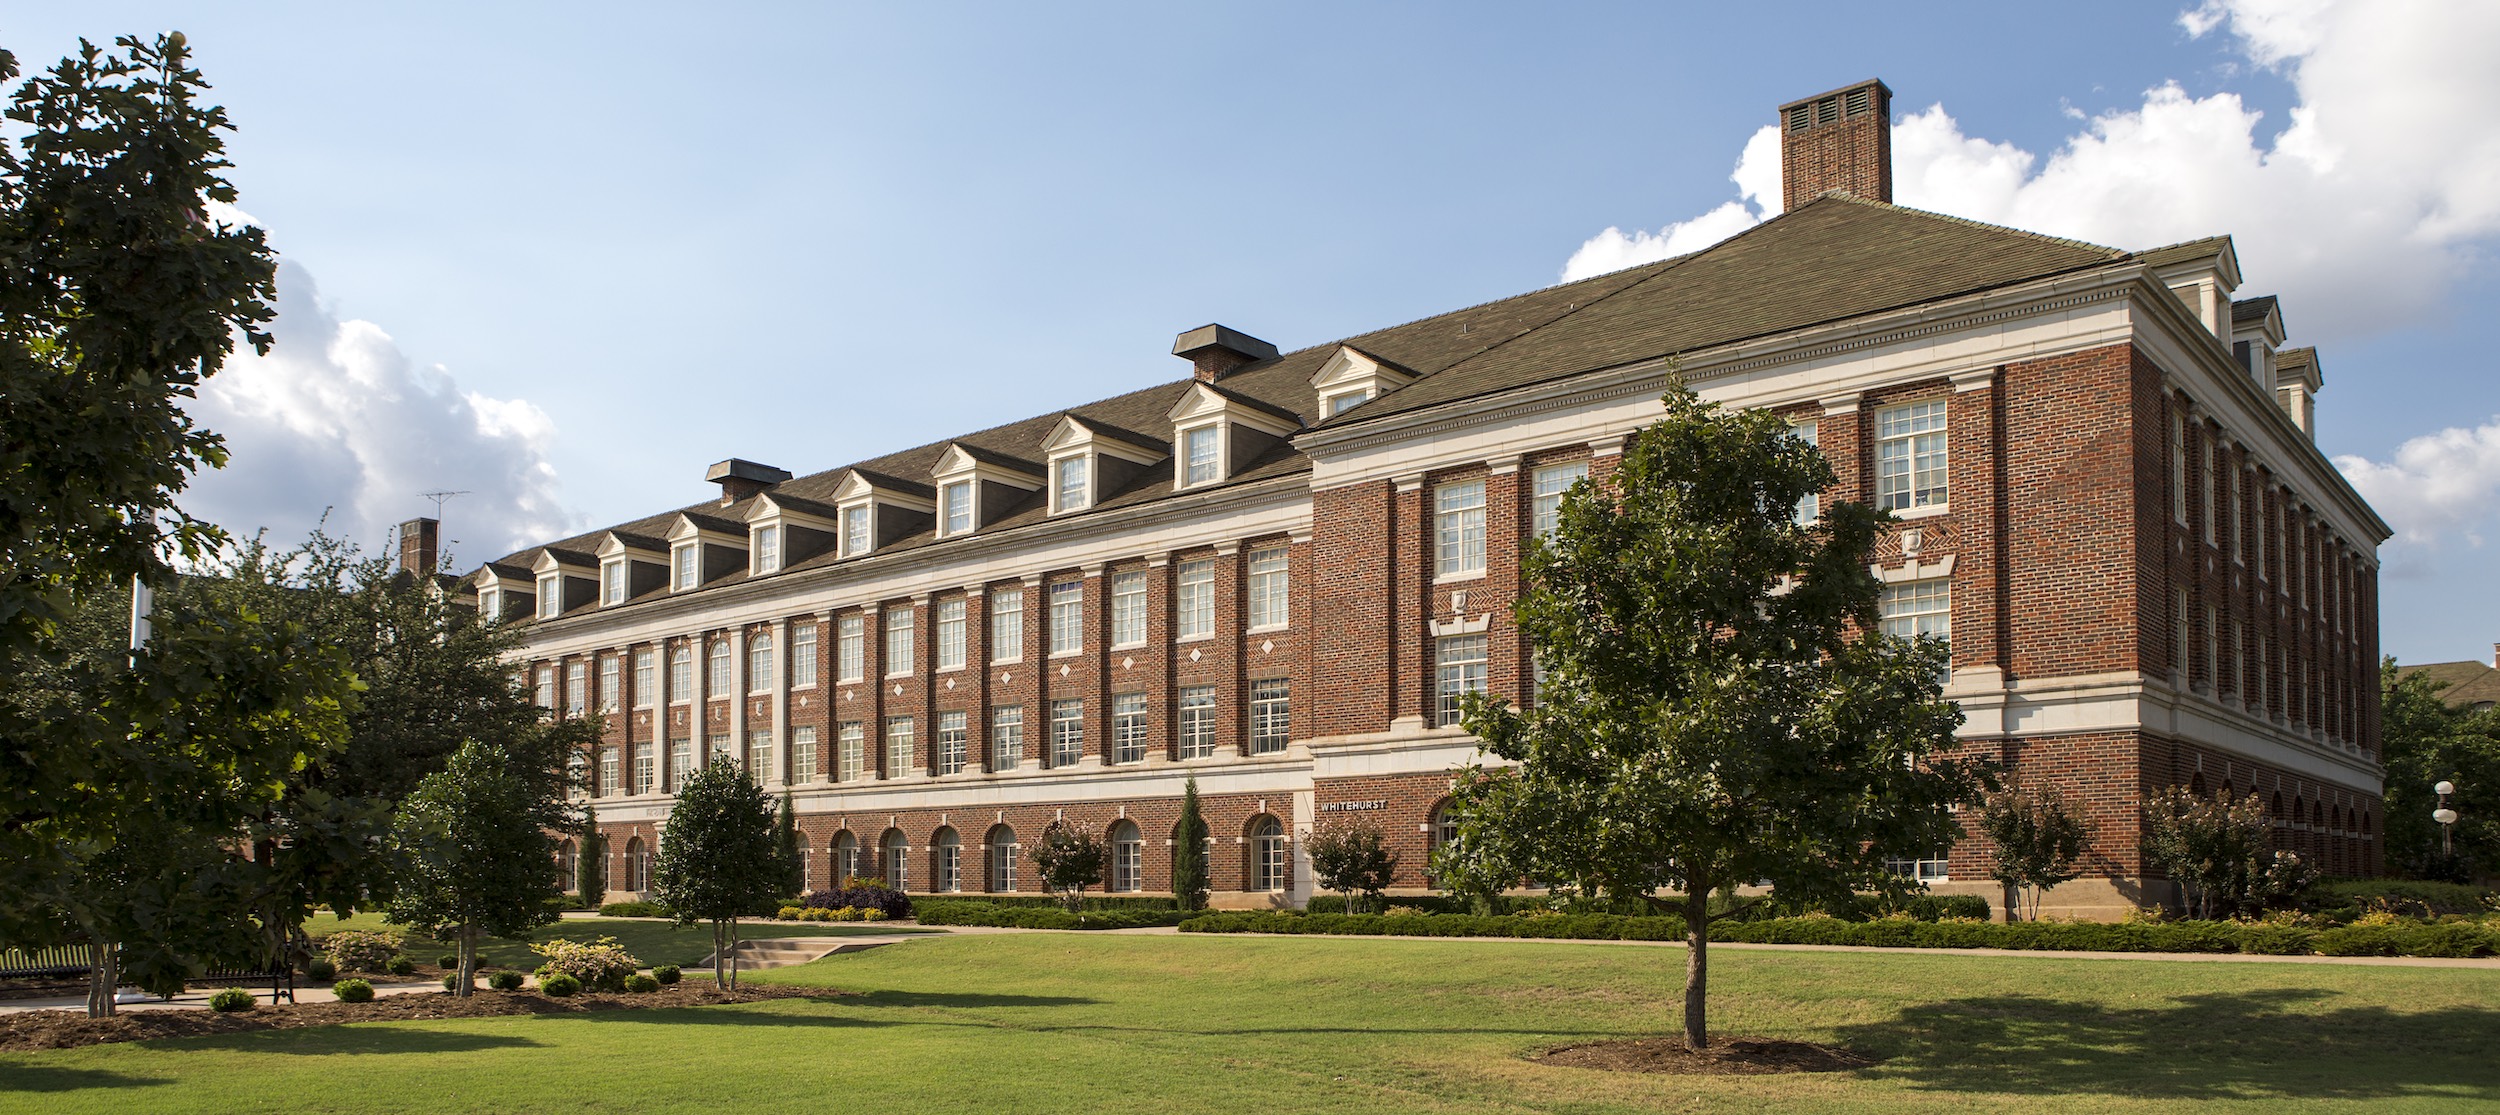 Whitehurst Hall at Oklahoma State University.